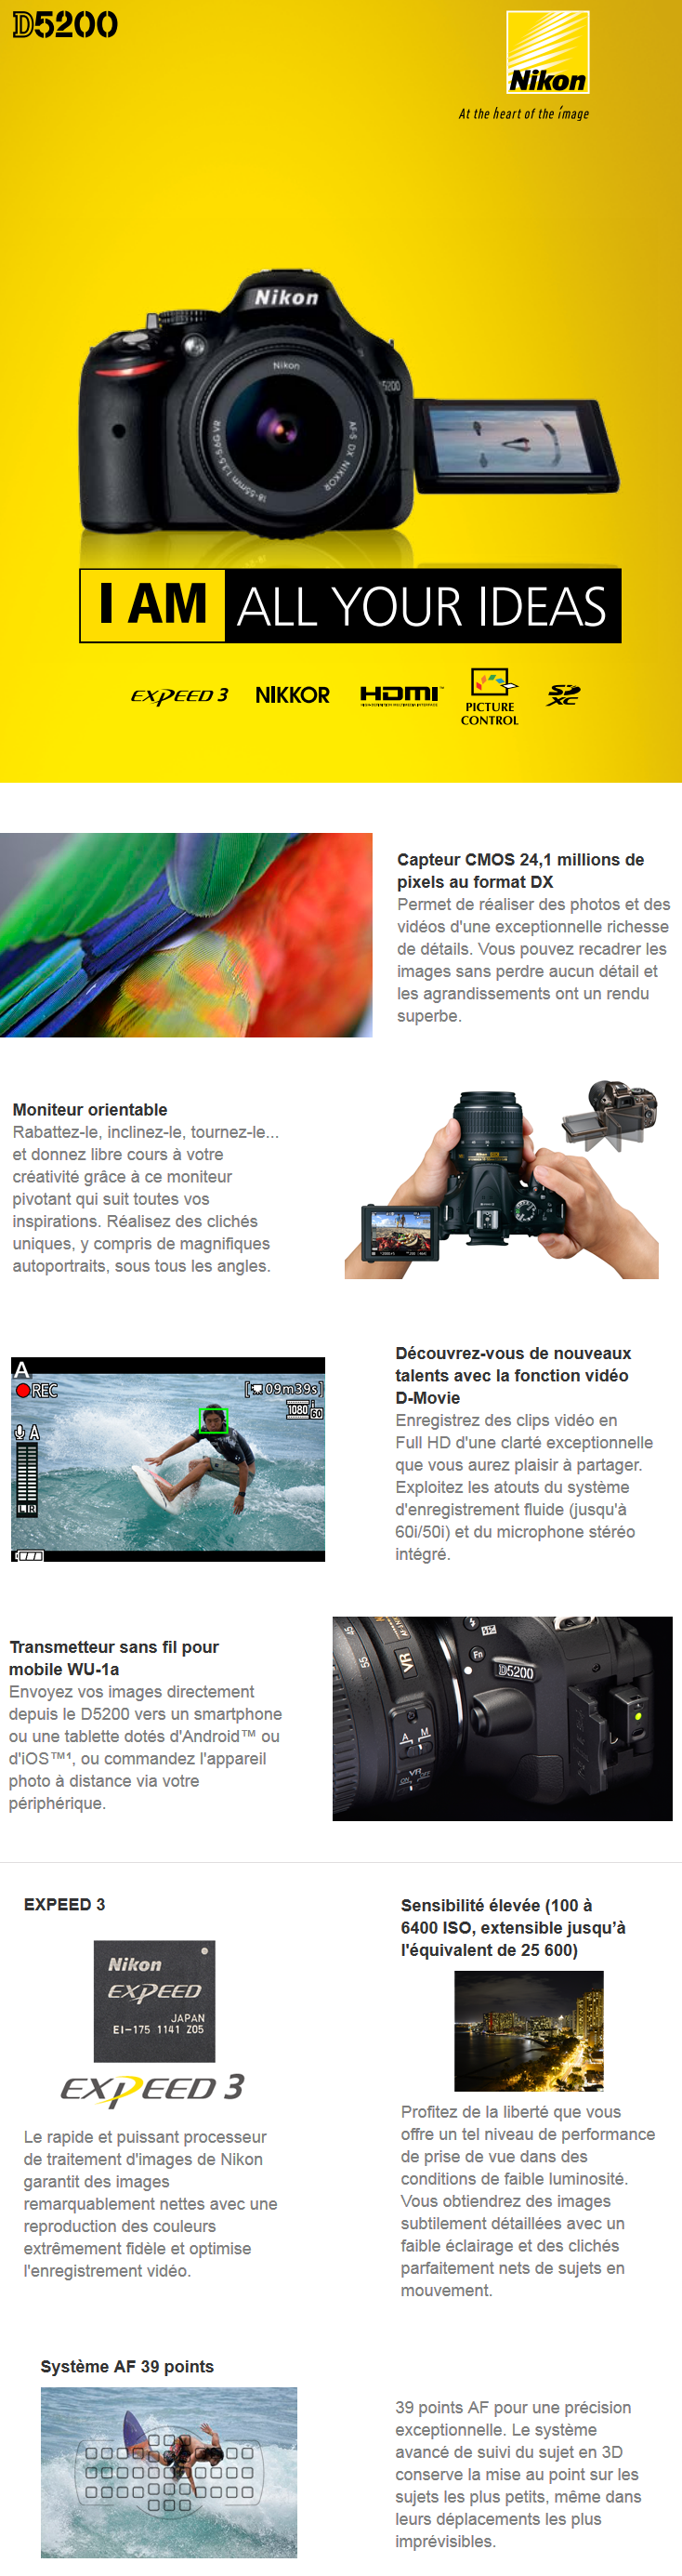 Acheter Reflex Nikon D5200 + Objectif AF-S DX Nikkor 18-55mm f/3.5-5.6G VR Maroc